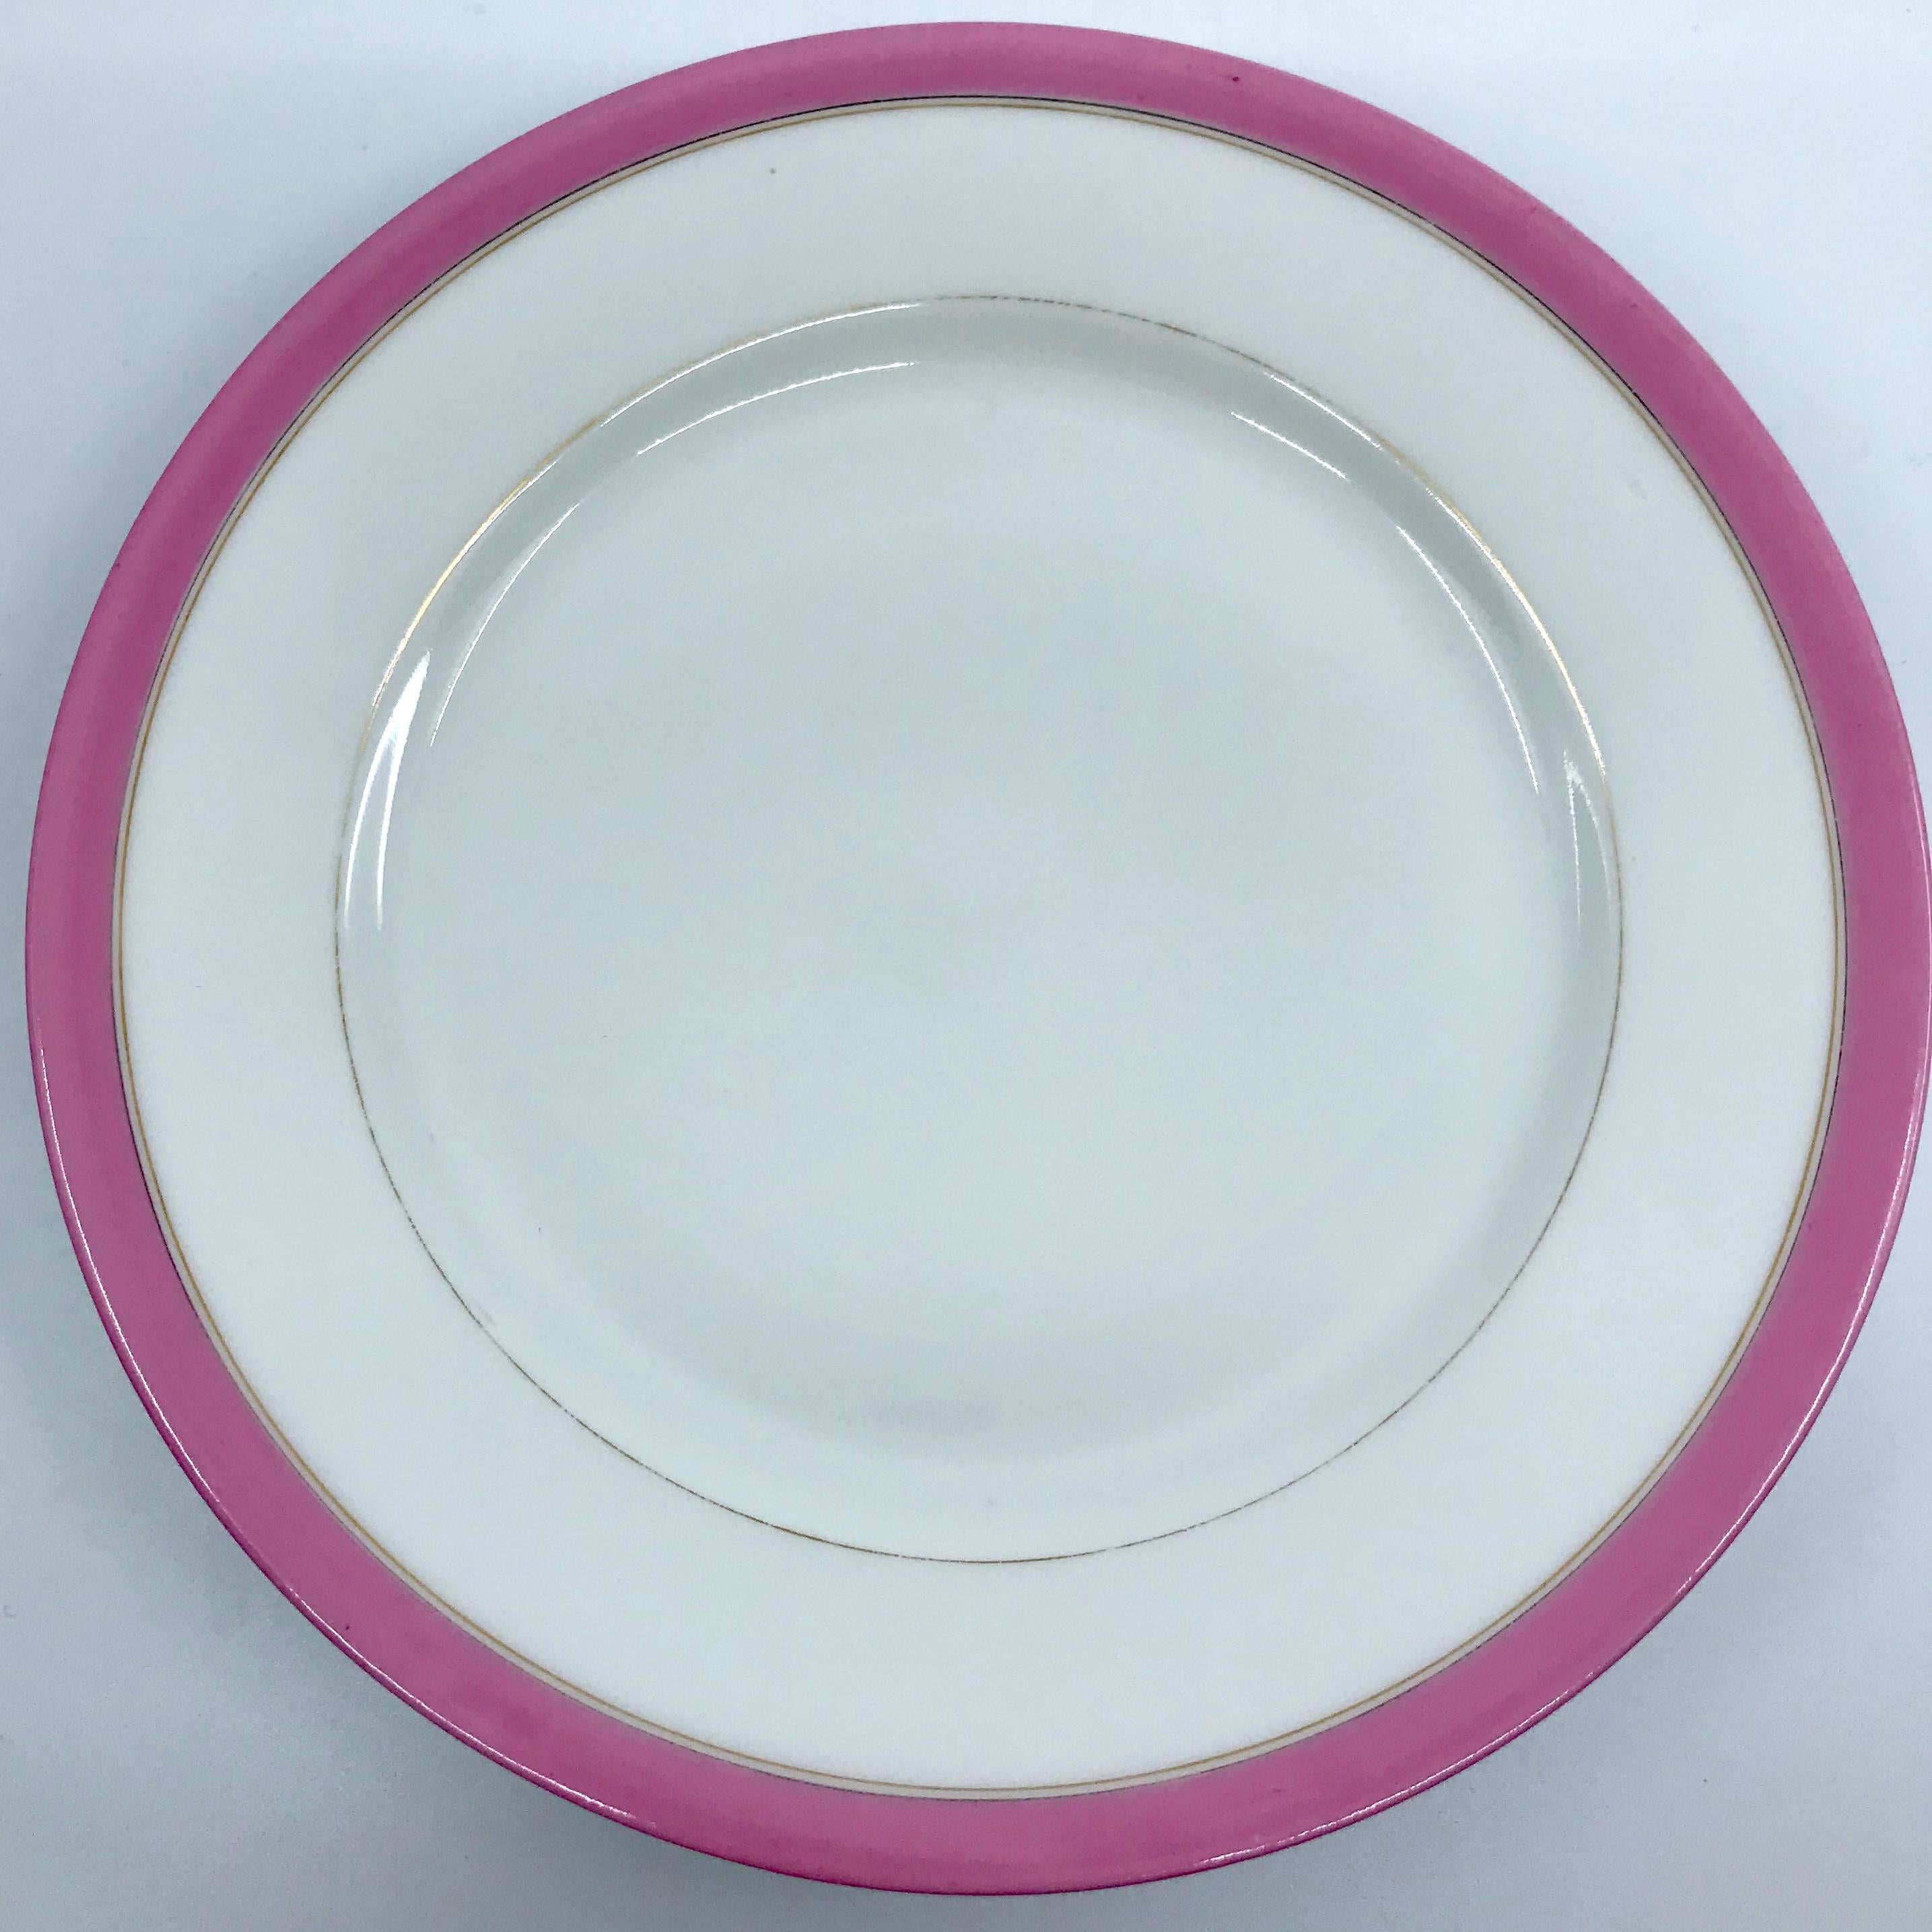 Ensemble de quatre assiettes françaises à bandeau rose et doré. Assiettes à dessert à fond blanc bordé d'une bande rose pâle et à bords dorés, France, début du XXe siècle.
Dimensions : 7.88